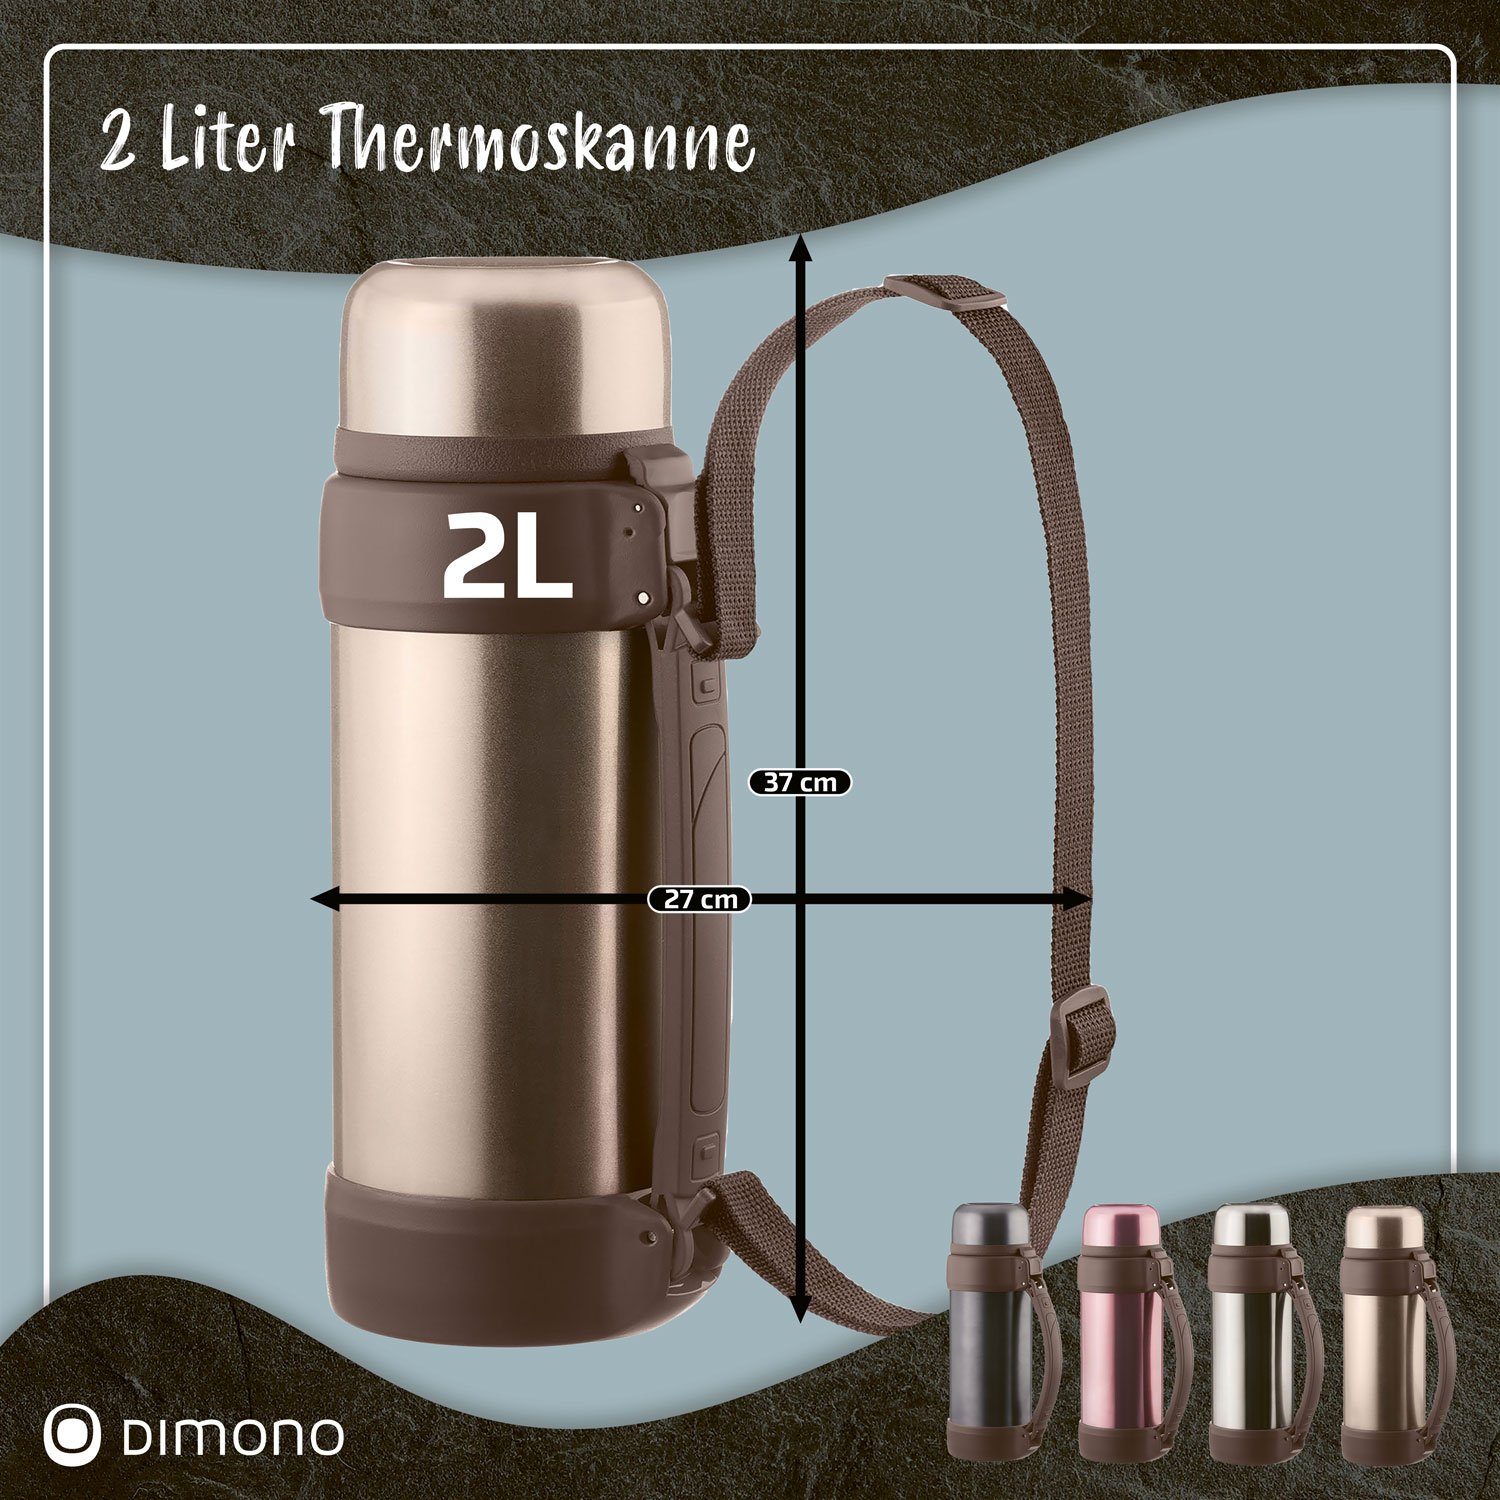 Dimono Thermoflasche Vakuum Isolierkanne XXL, Isolierflasche Liter Bronze-Metallic 2 Thermoskanne